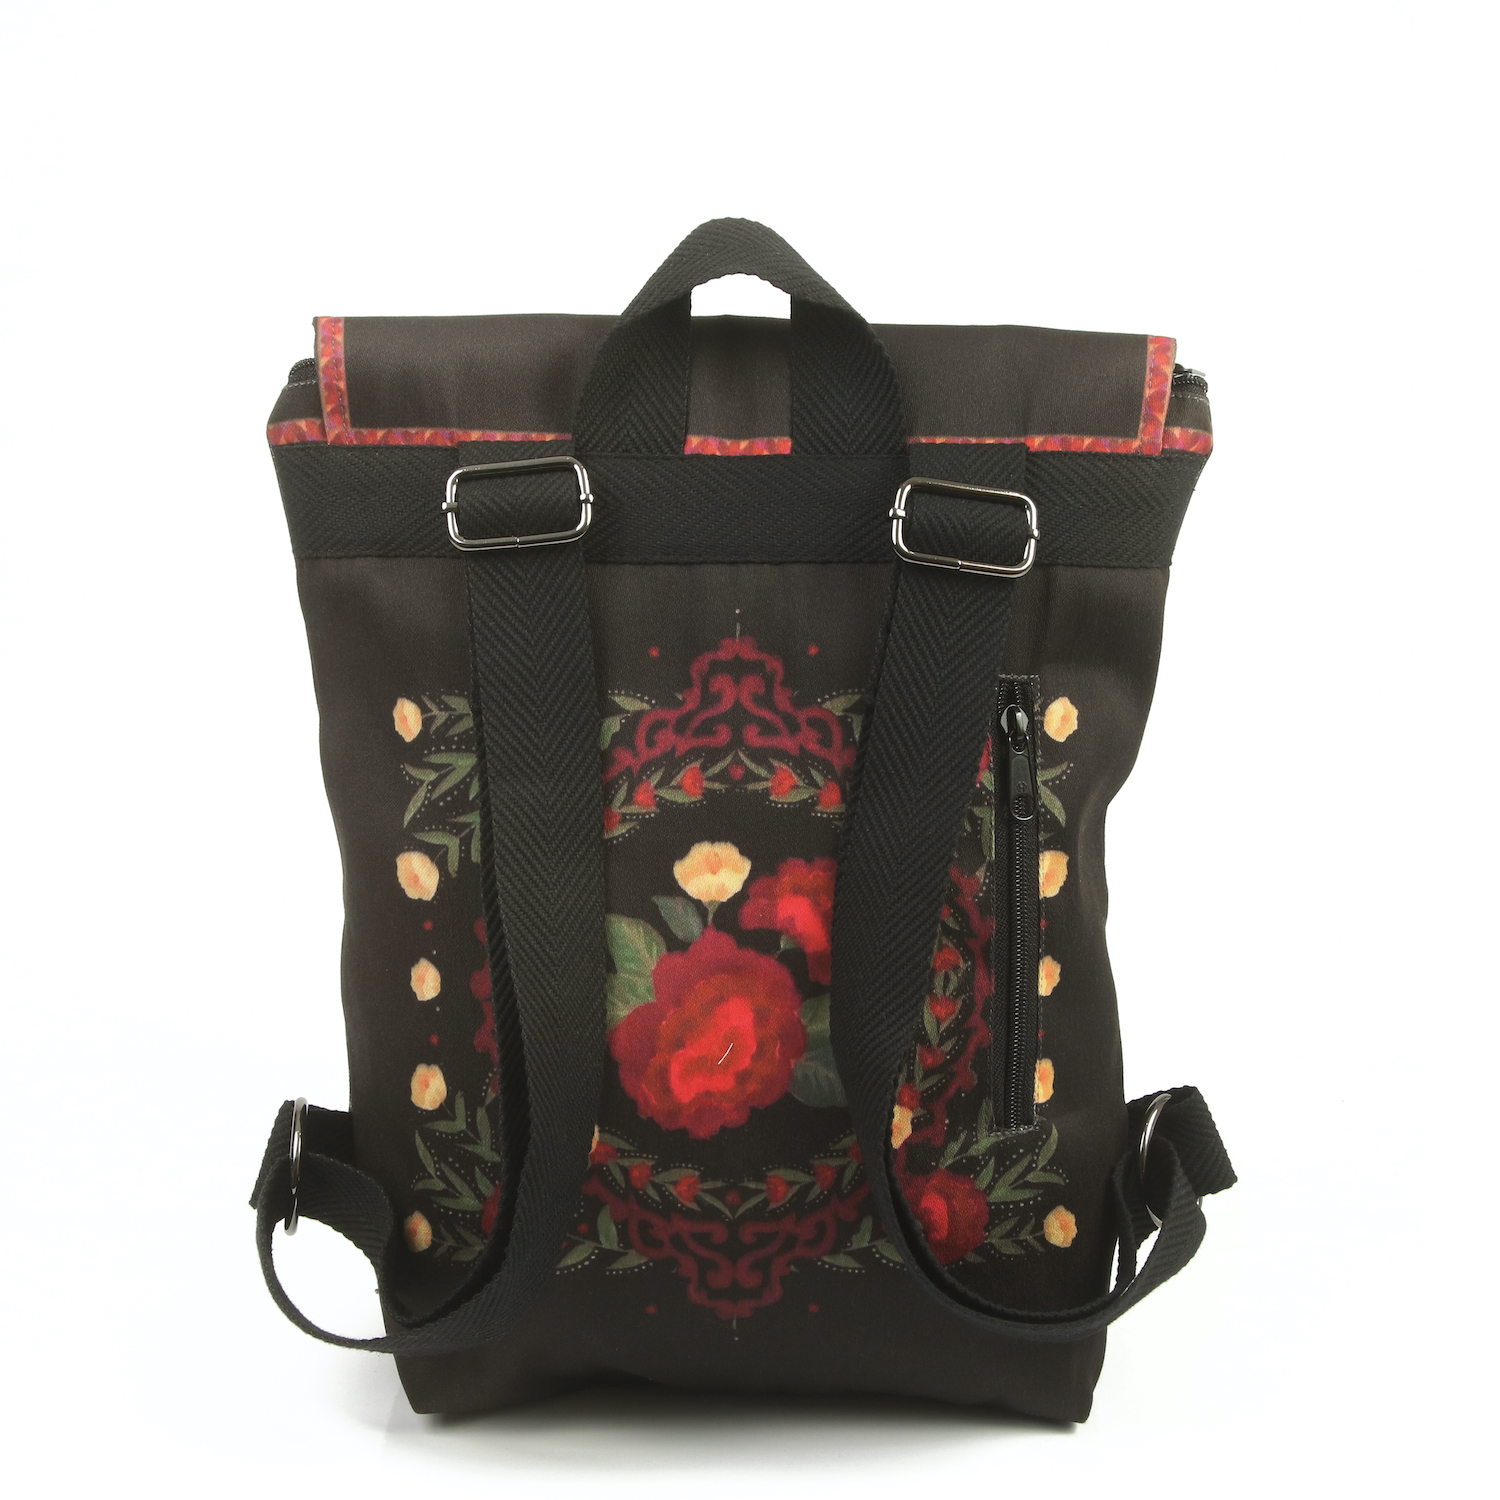 LazyDayz Designs Backpack γυναικείος σάκος πλάτης χειροποίητος bb0703c